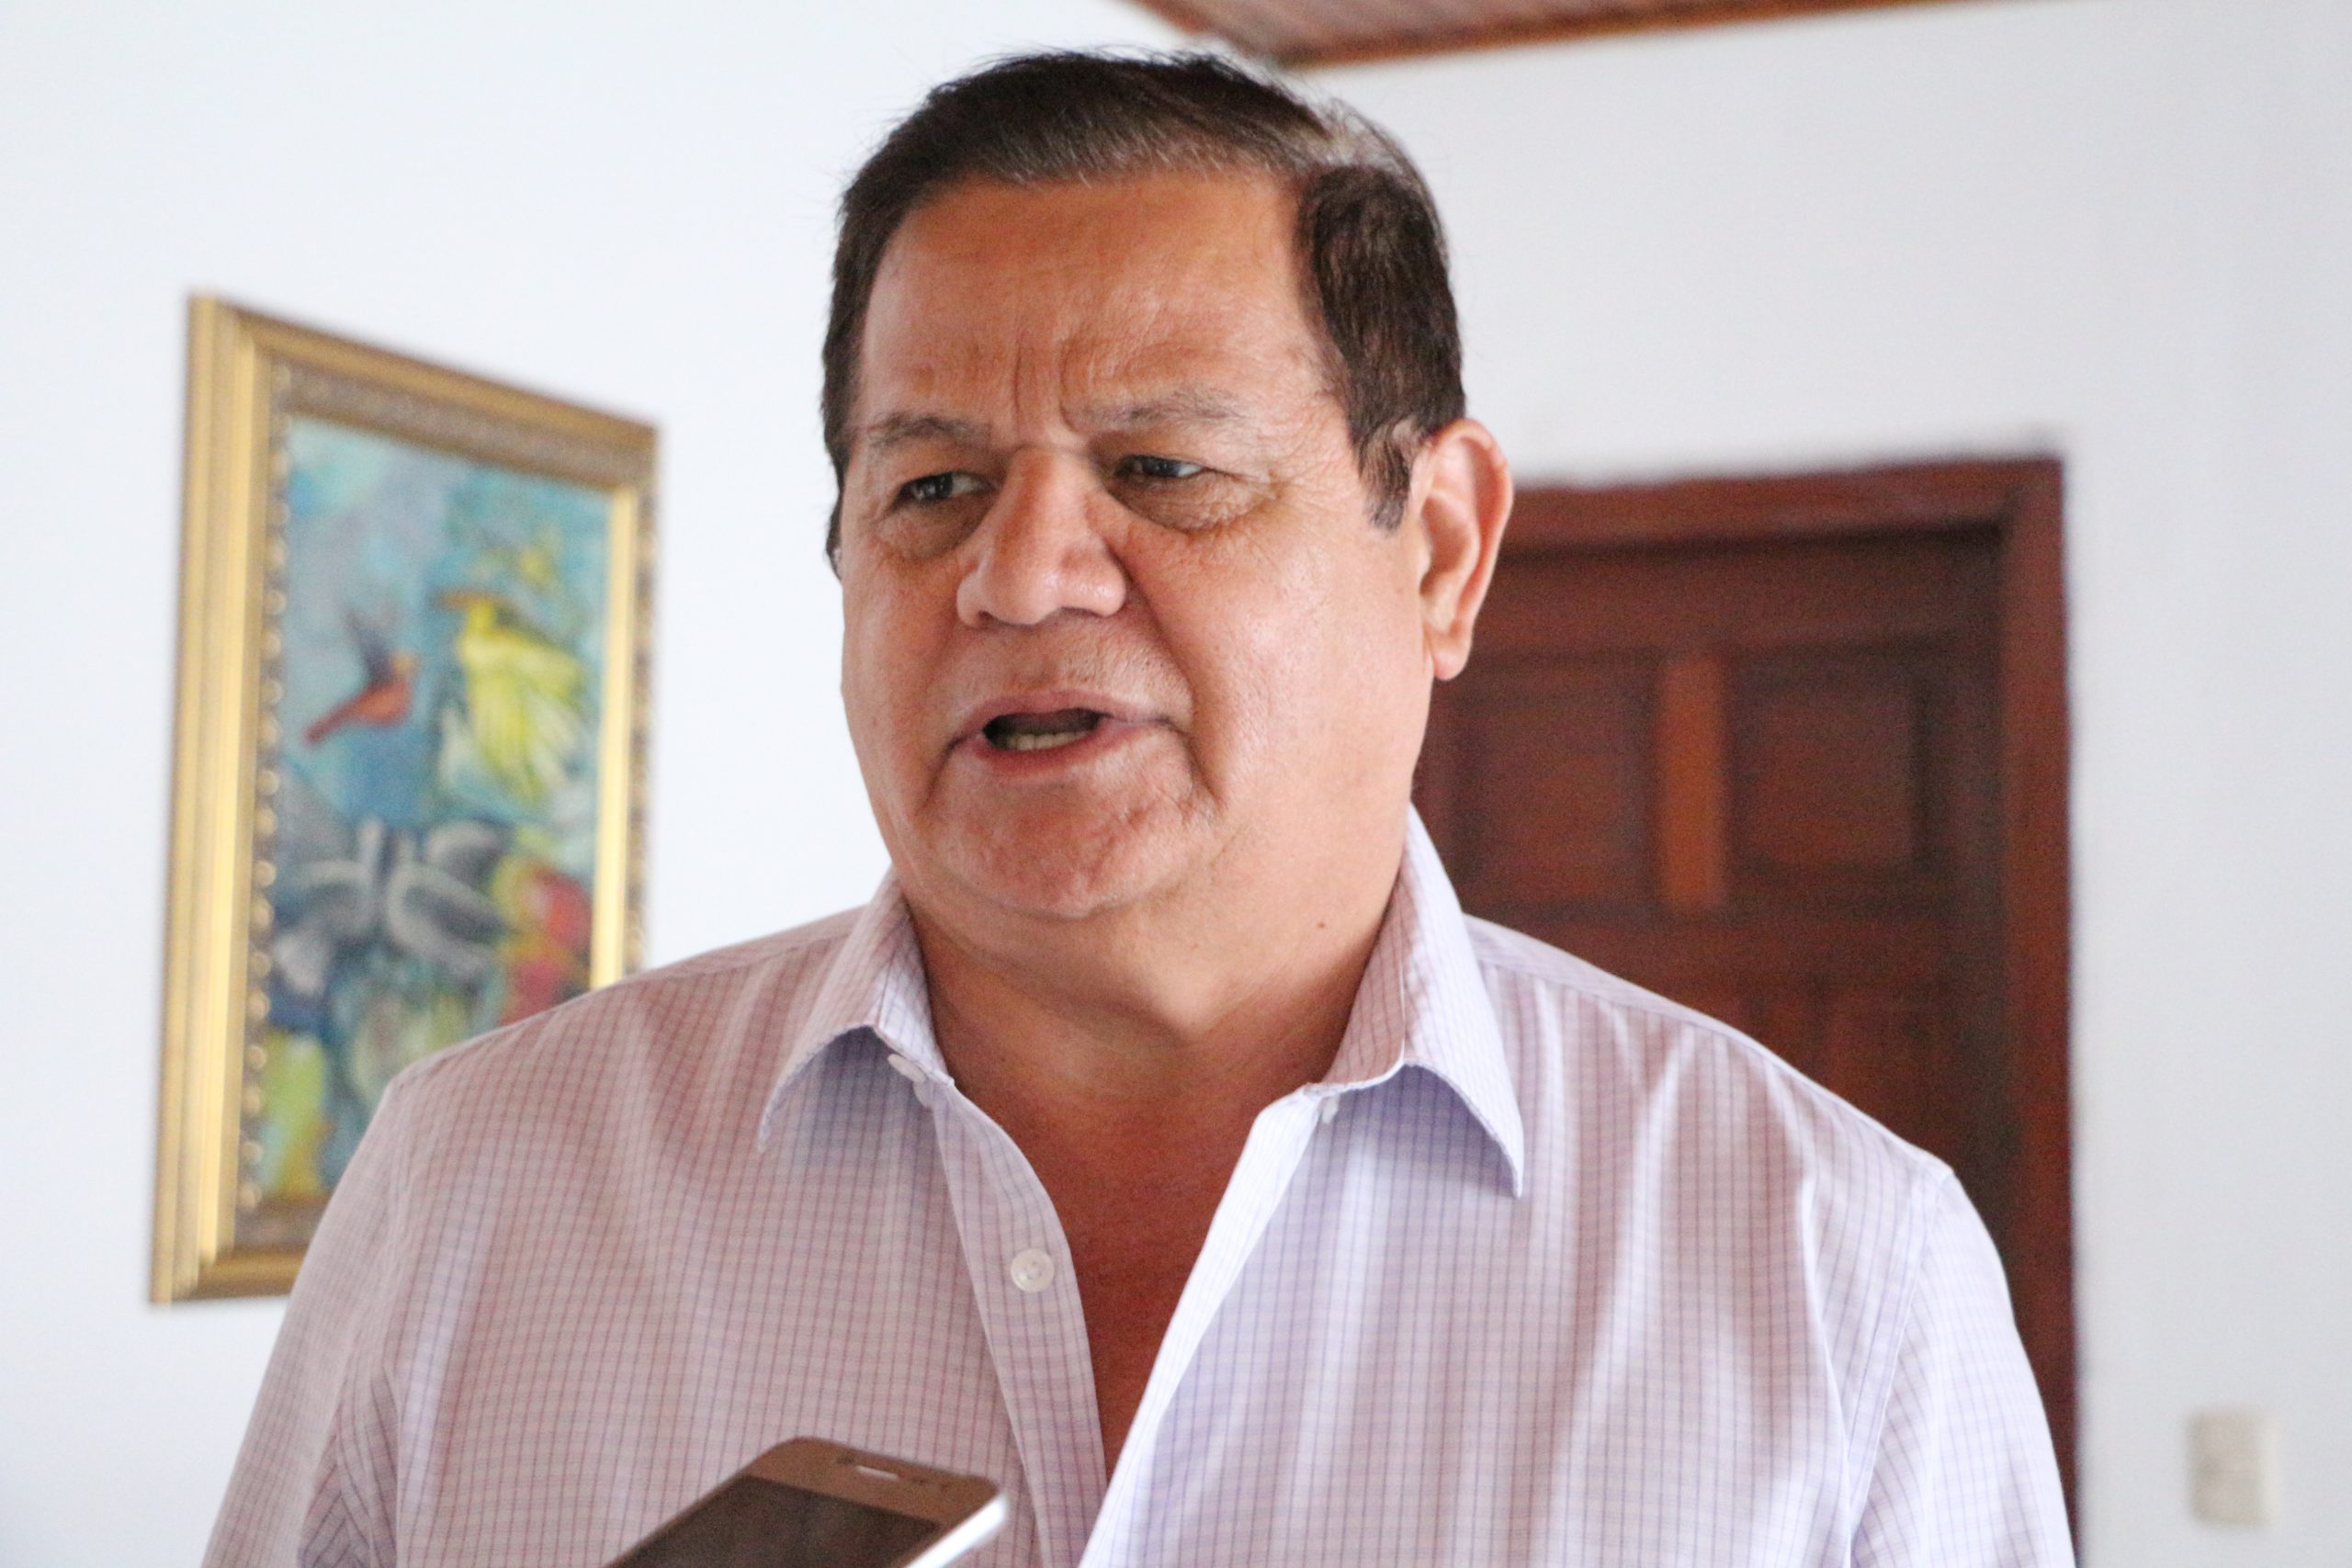 Interés de Libre por elegir al Fiscal General es para “perseguir” la oposición, dice Romeo Vásquez